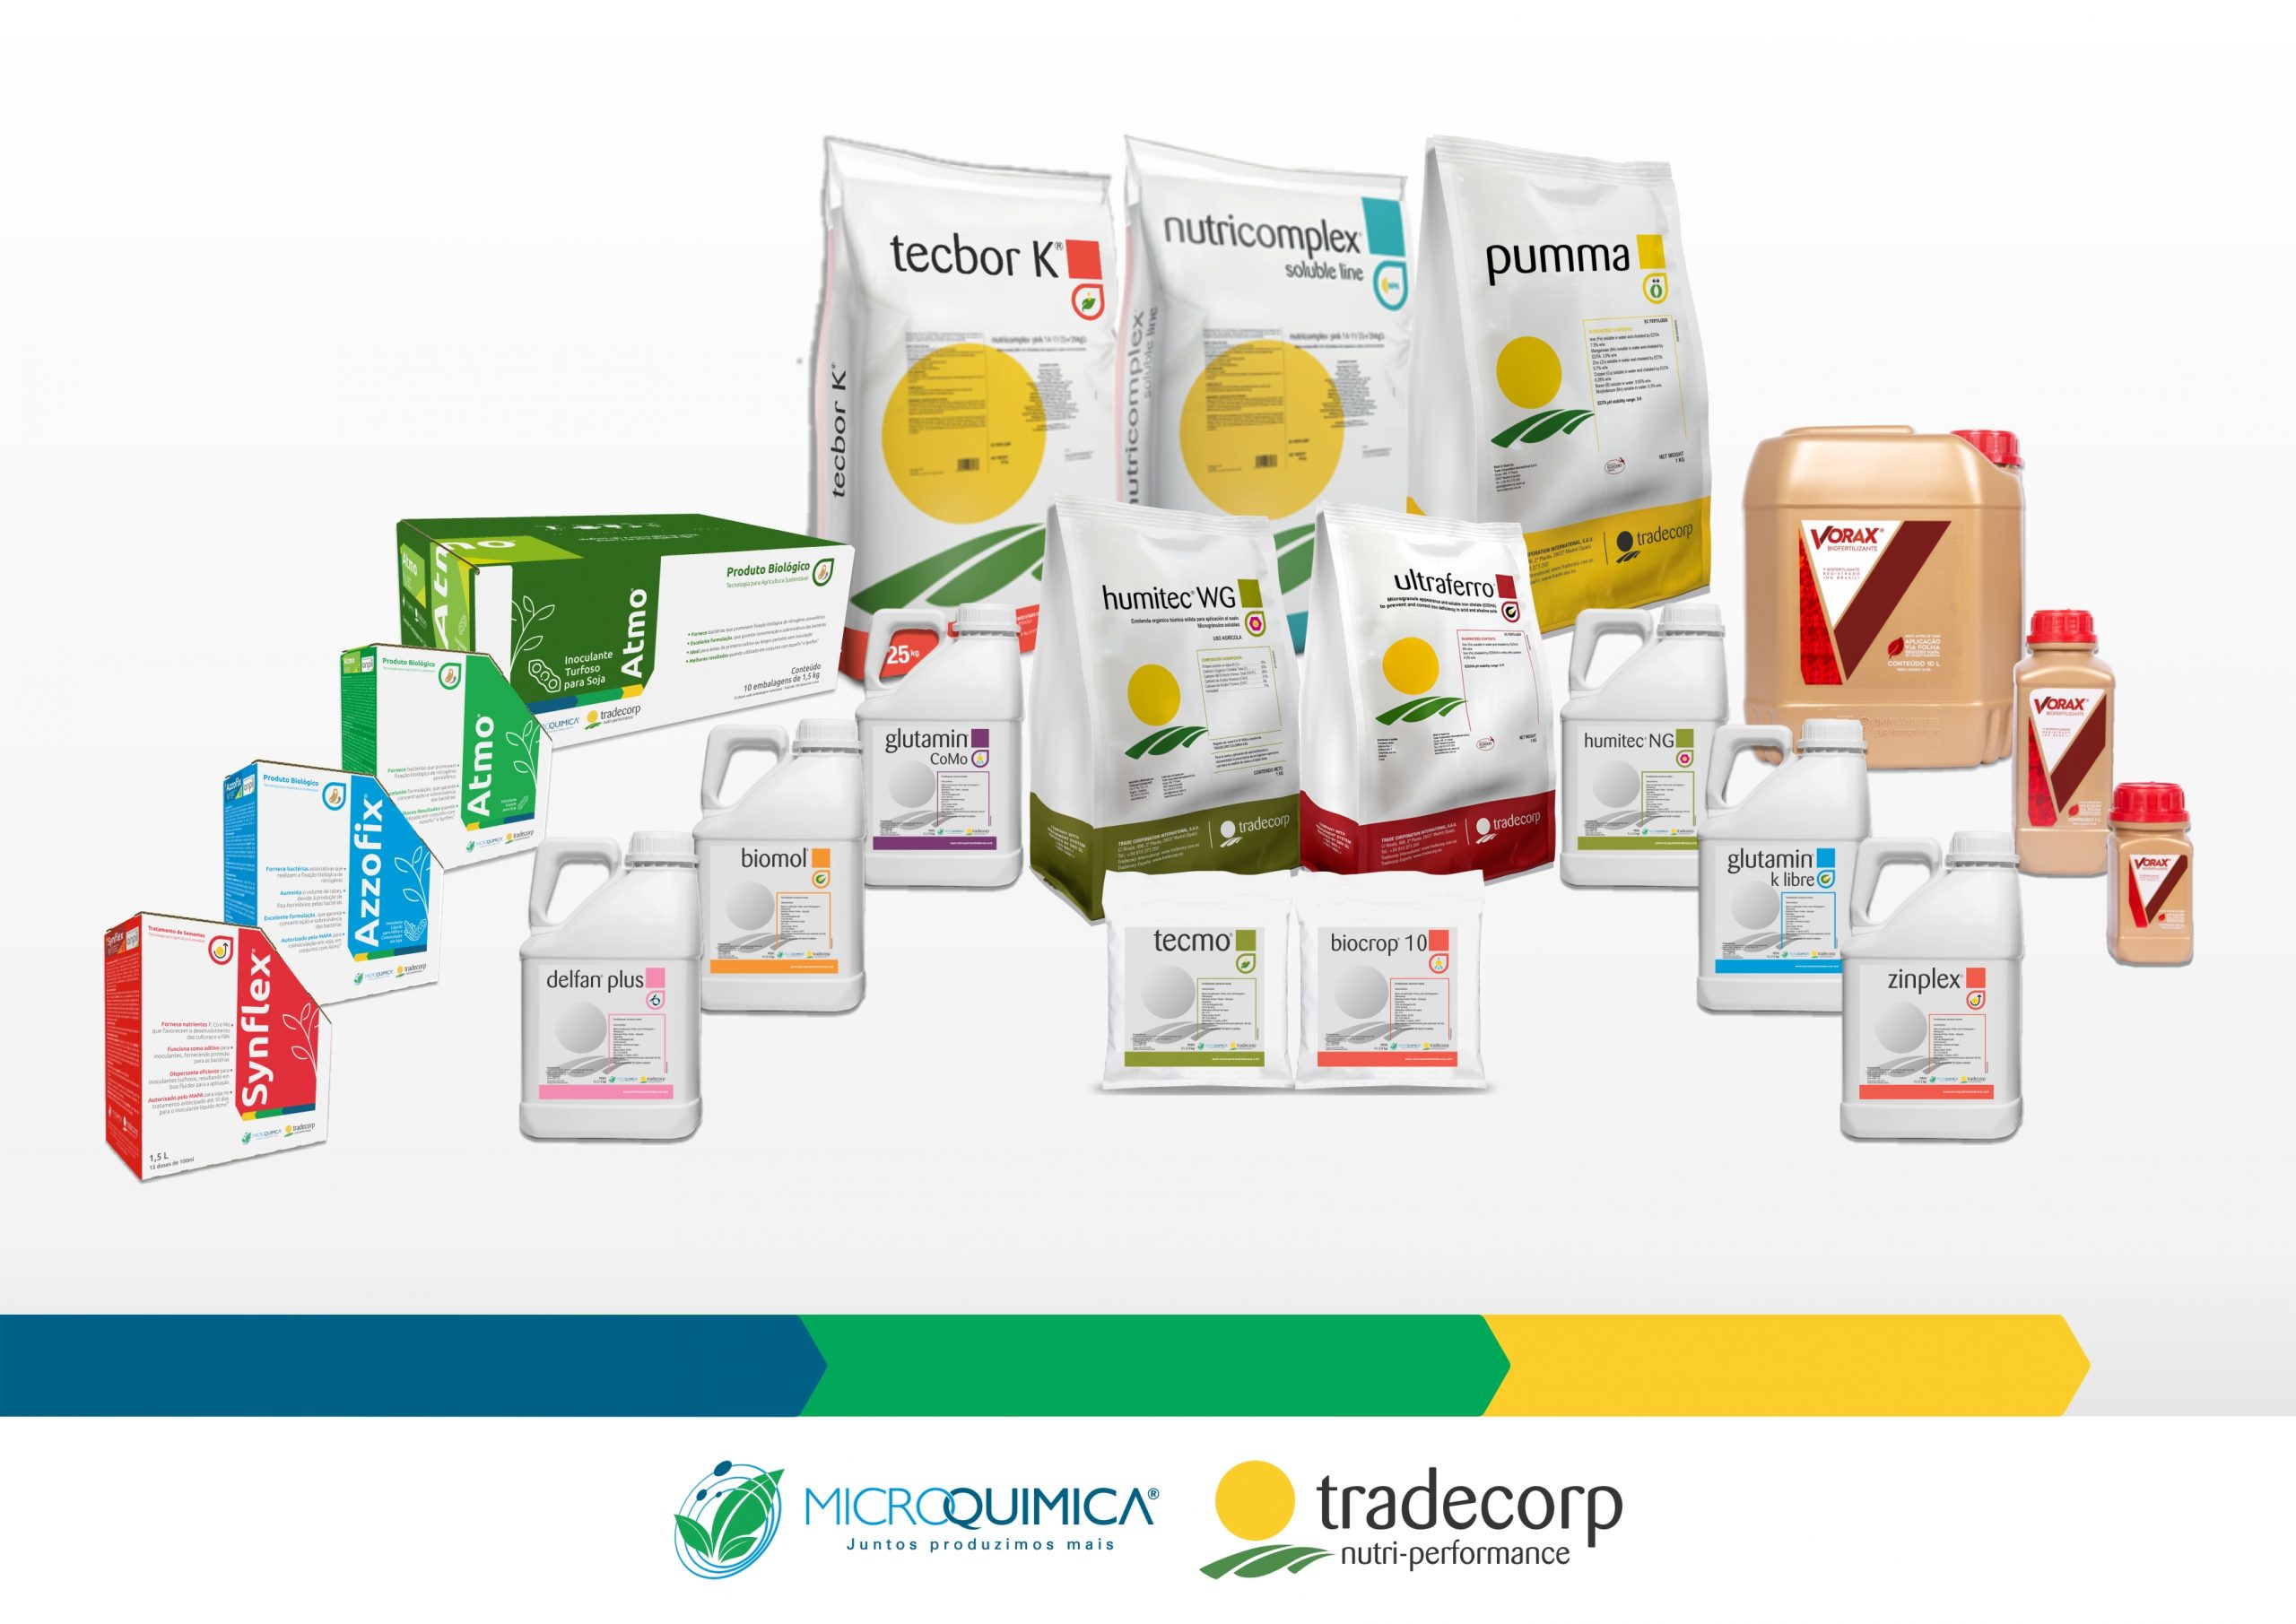 Produtos Microquimica Tradecorp com novo visual - AgroRevenda